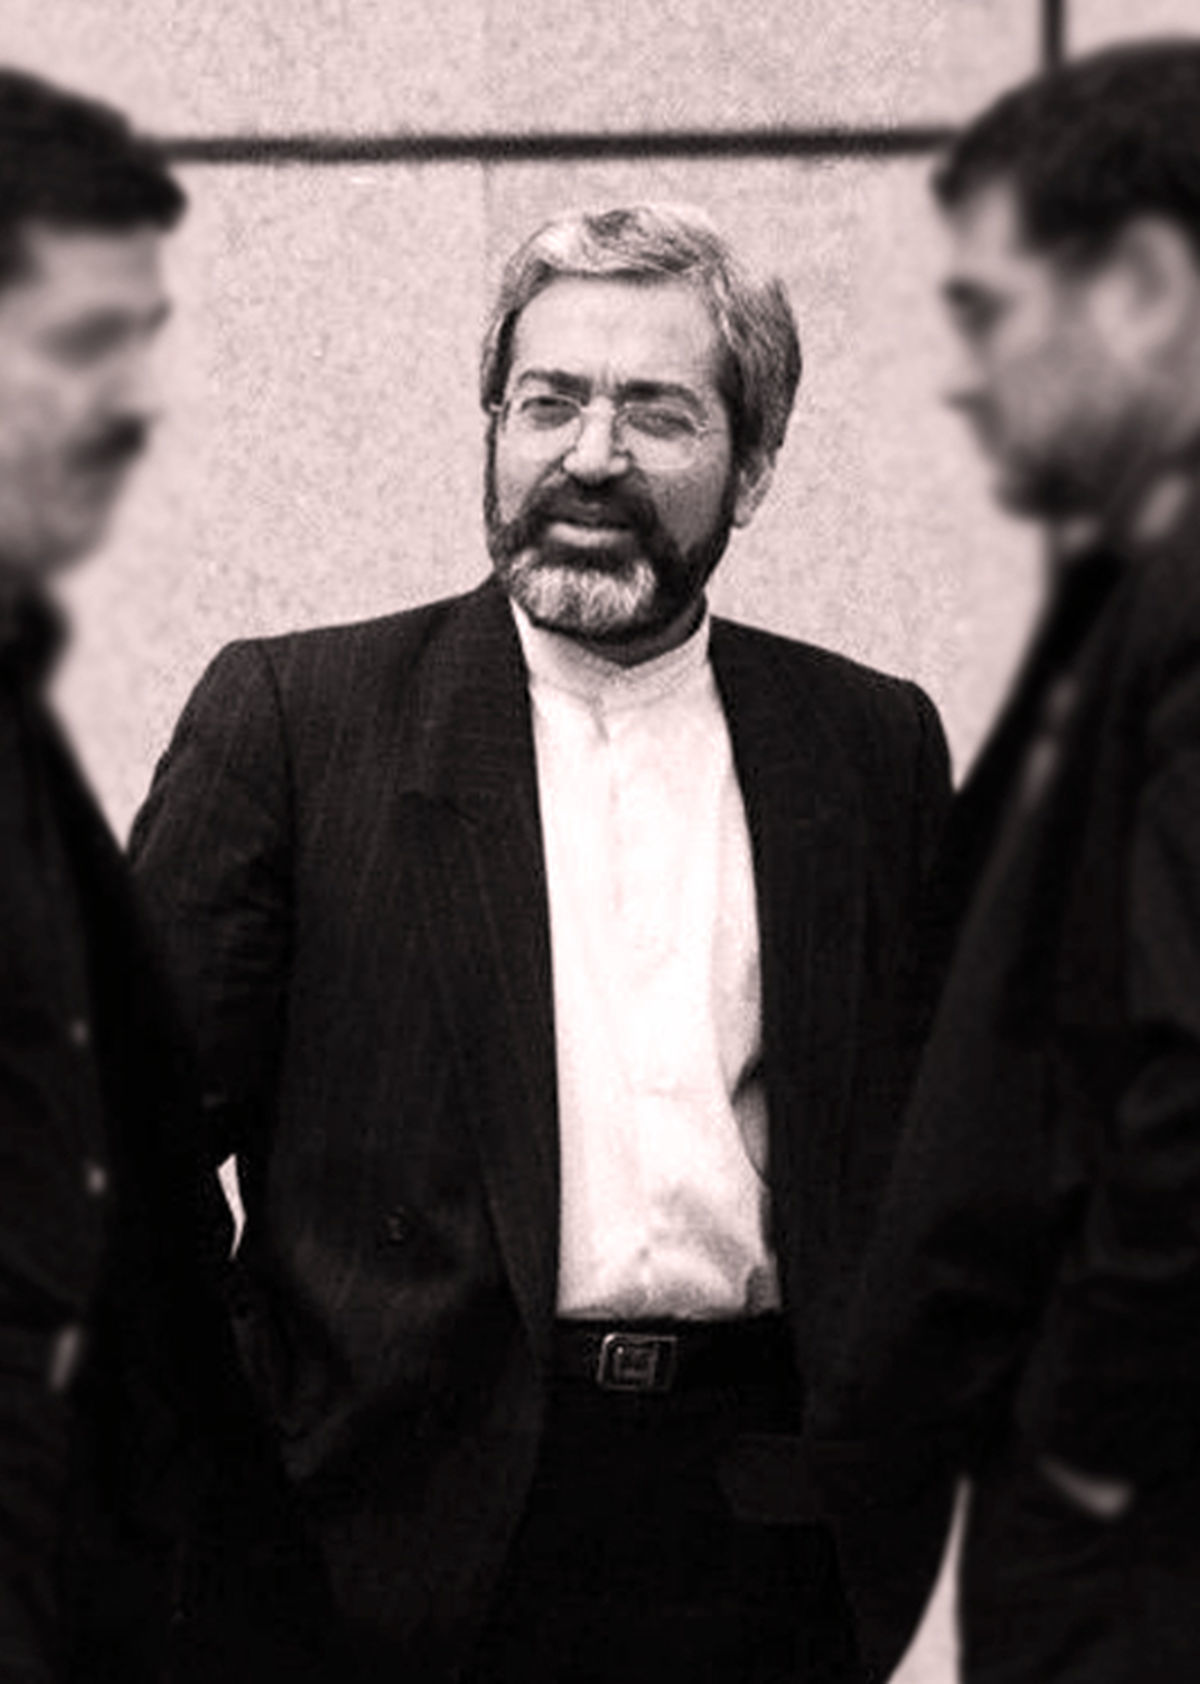  مرد تمام فصول اقتصاد ایران /چهره حزب اللهی که عملگرا شد